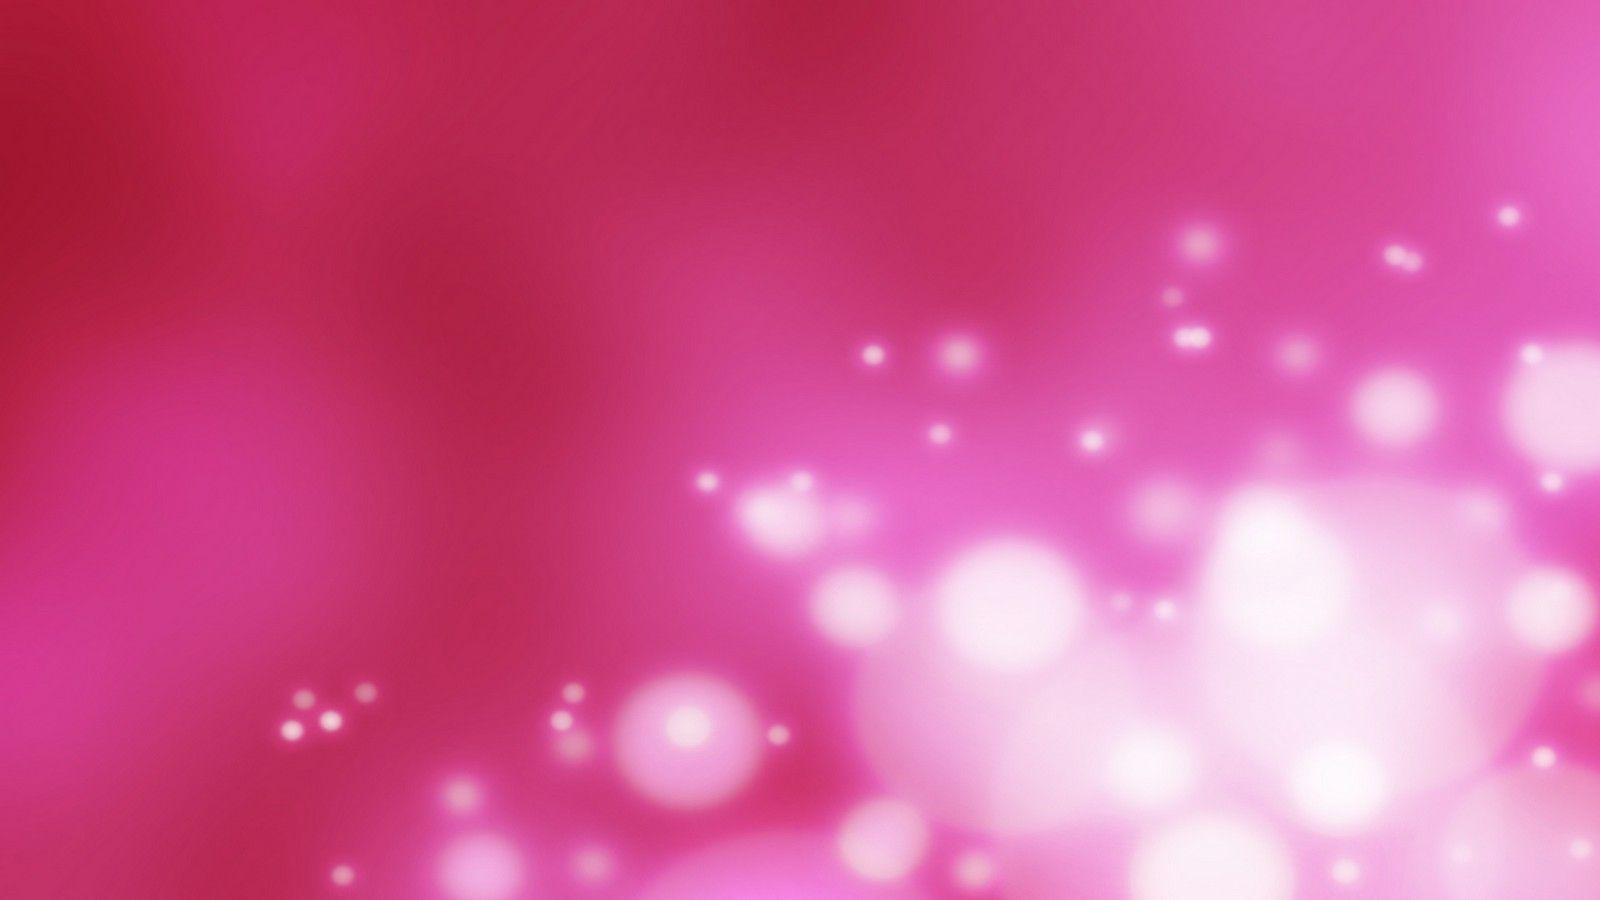 Hình nền màu hồng đẹp luôn là sự lựa chọn hàng đầu của nhiều người, và bạn cũng không ngoại lệ. Hãy truy cập vào đường link liên kết để tải về những hình nền màu hồng đẹp nhất cho desktop của bạn.